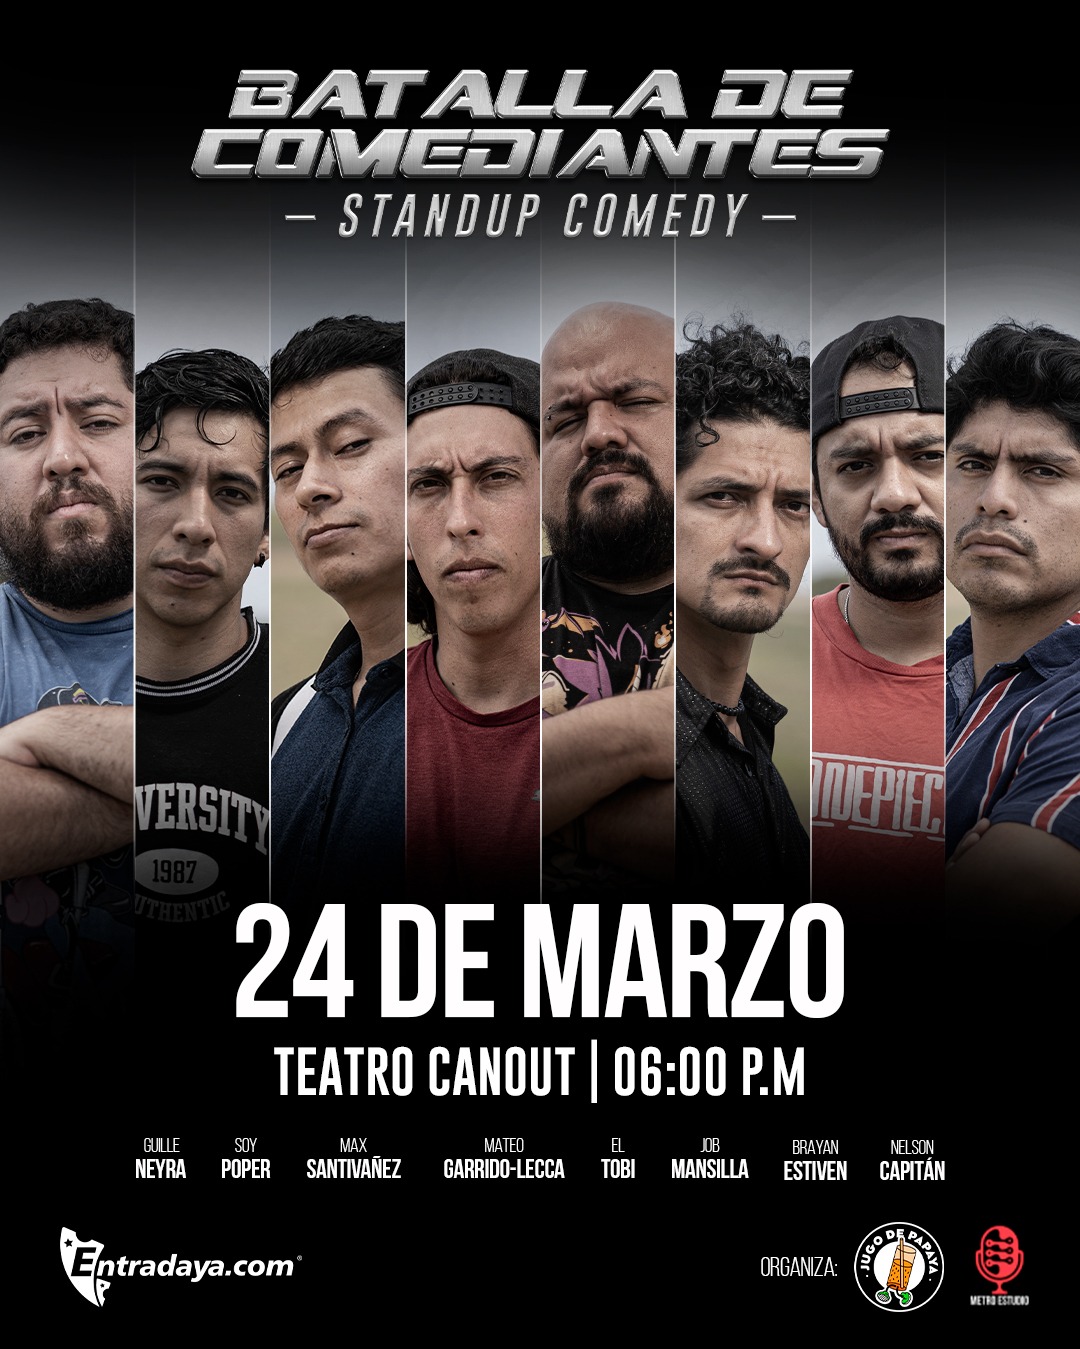 'La Batalla de los Comediantes' se realizará el 24 de marzo en el Teatro Canout / Difusión